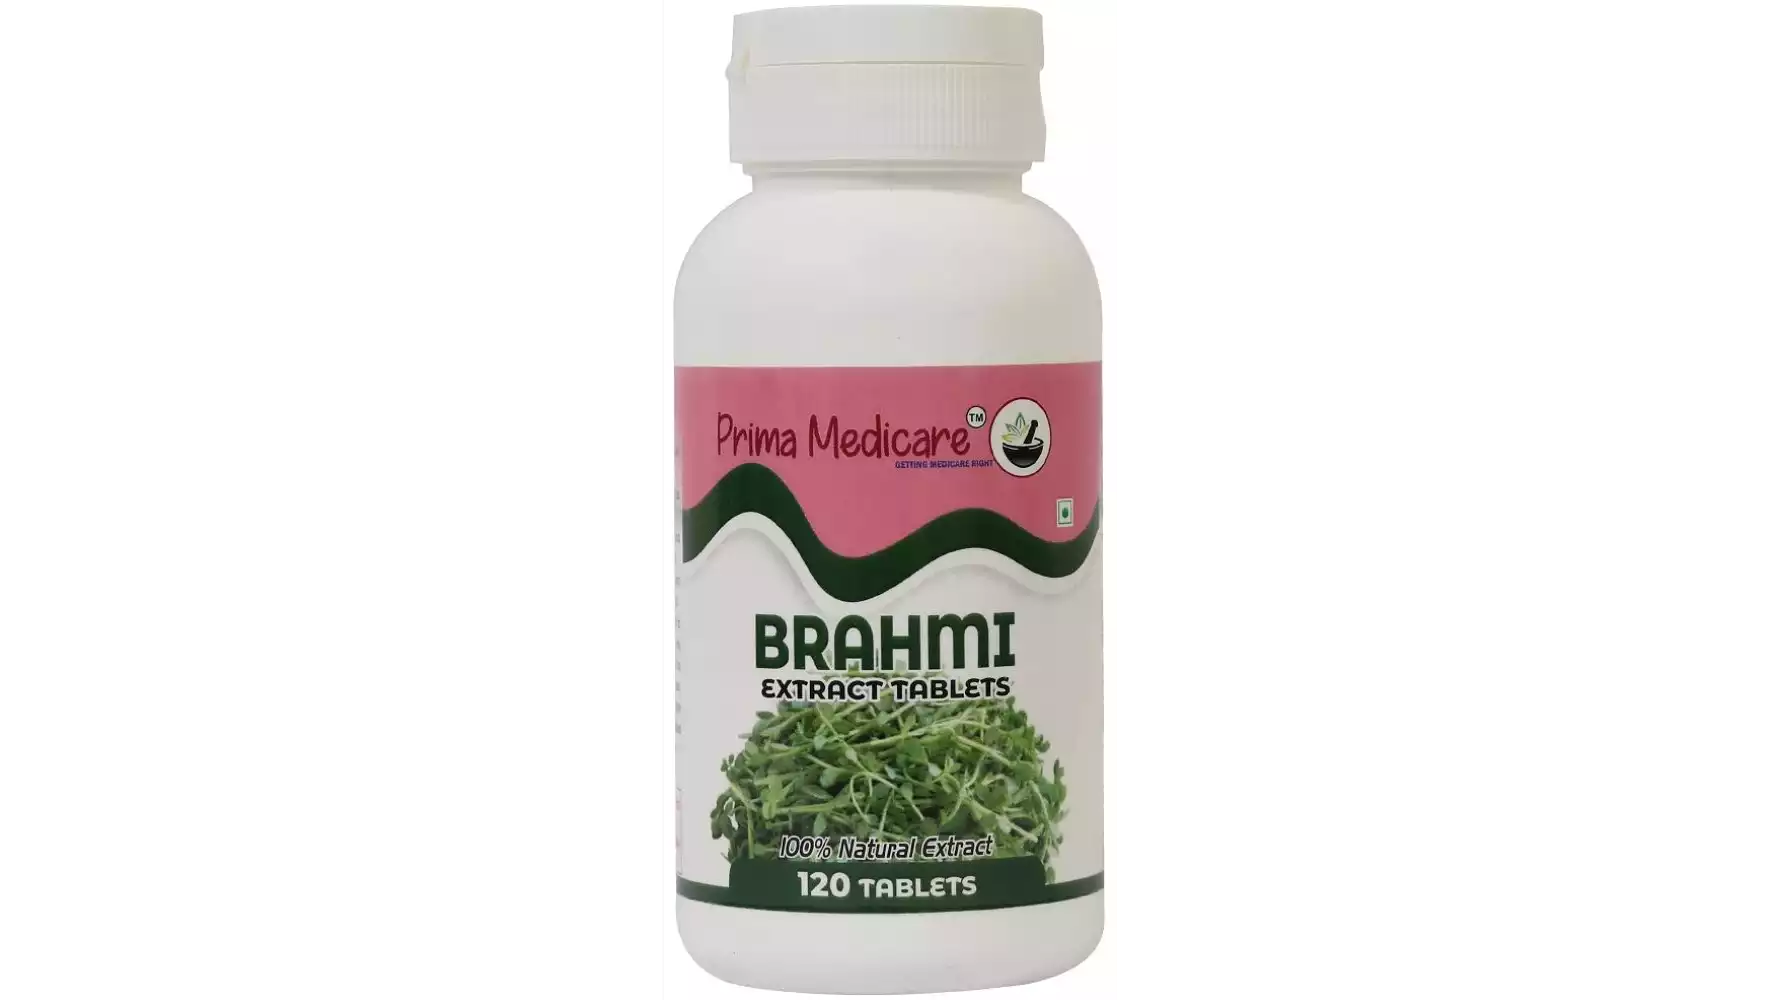 Prima Medicare Brahmi Extract Tablets (120tab)